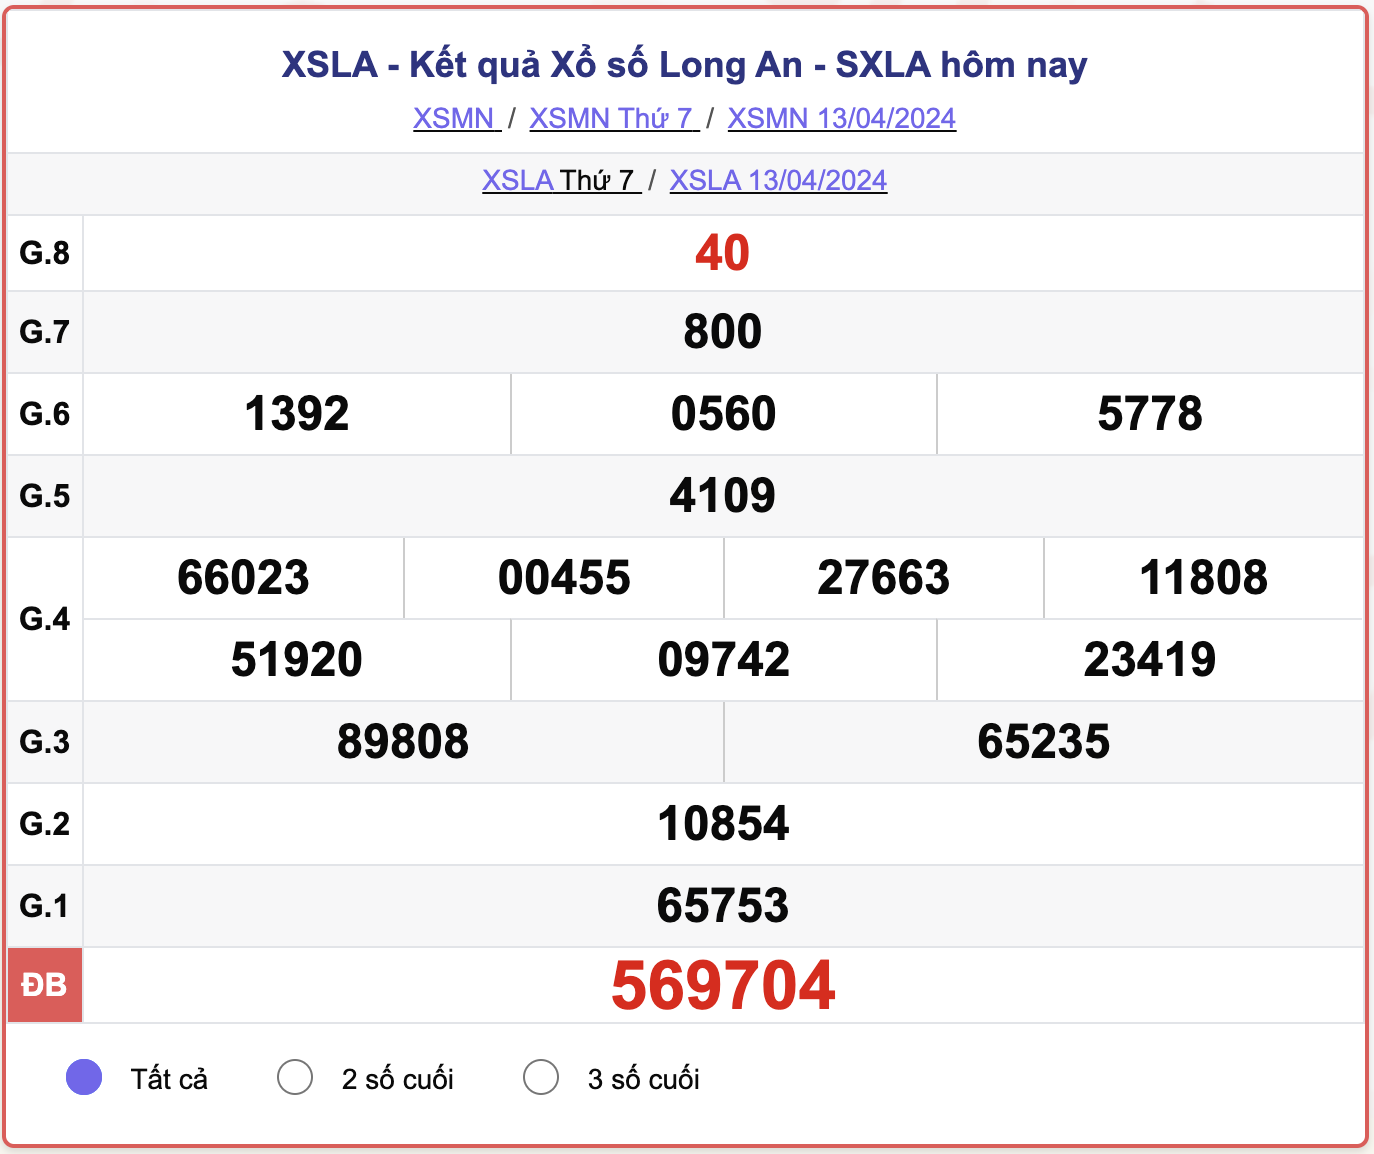 XSLA thứ 7, kết quả xổ số Long An ngày 13/4/2024.